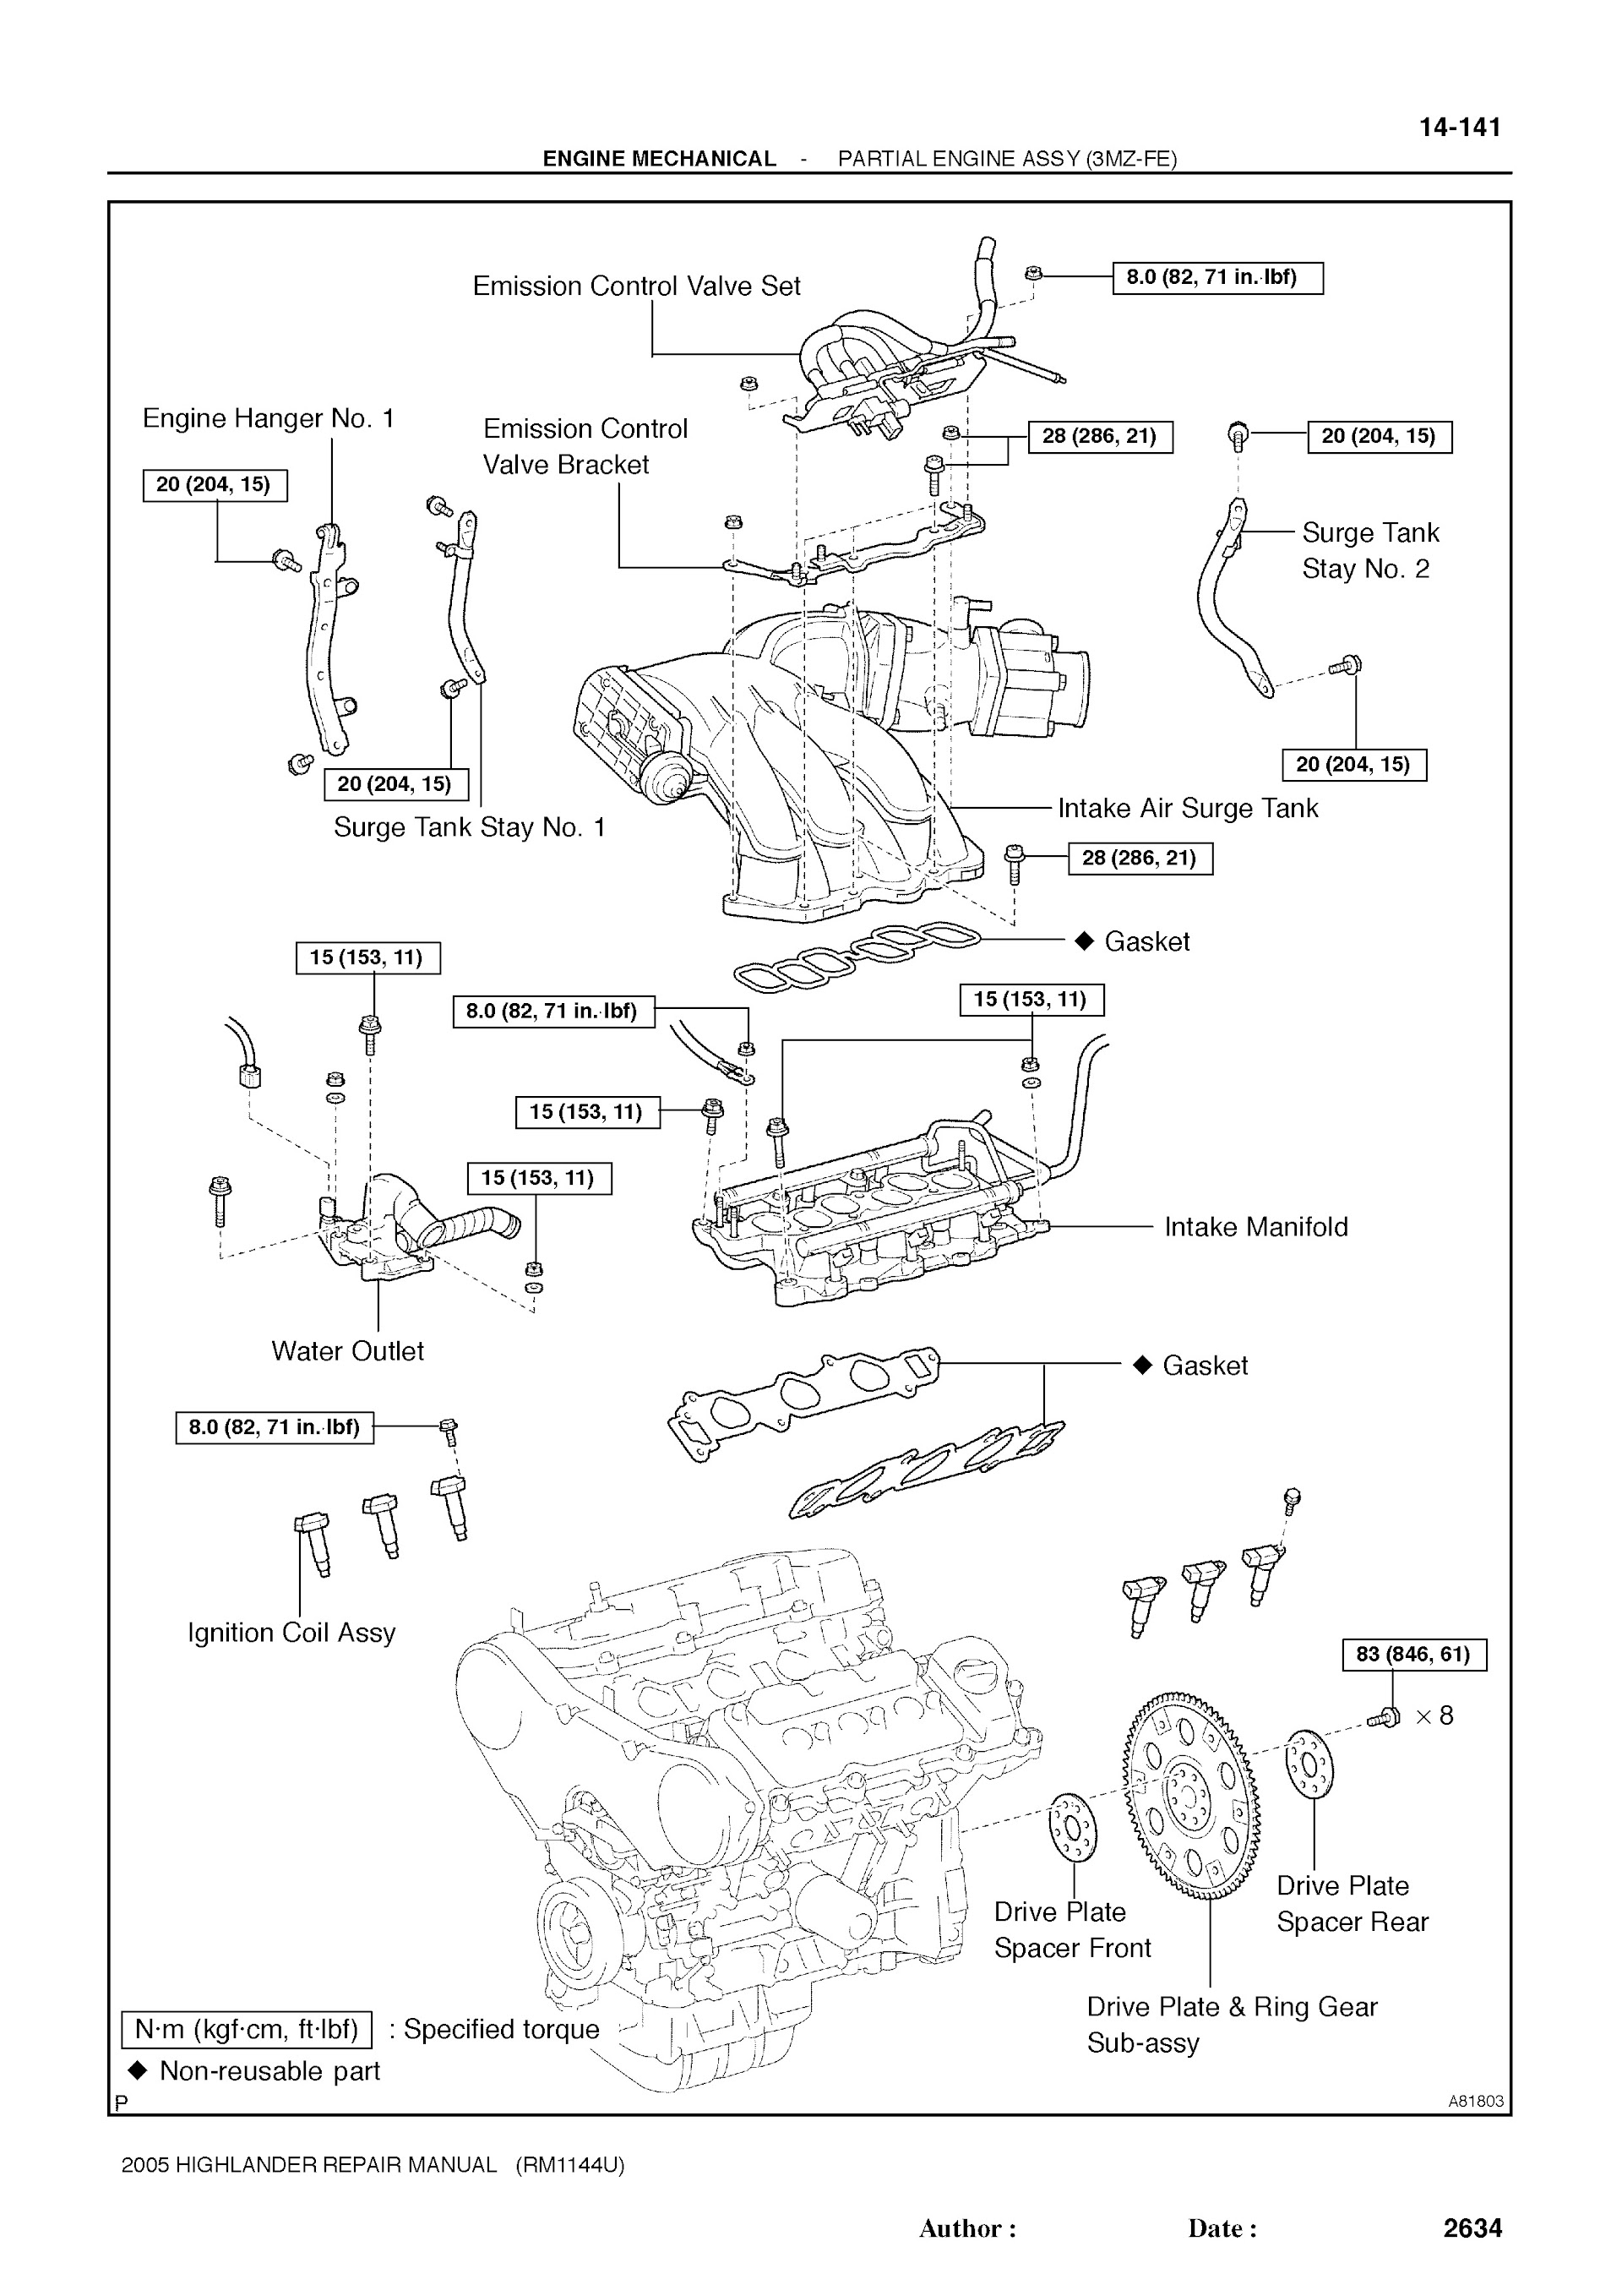 2001-2007 Toyota Highlander Repair Manual